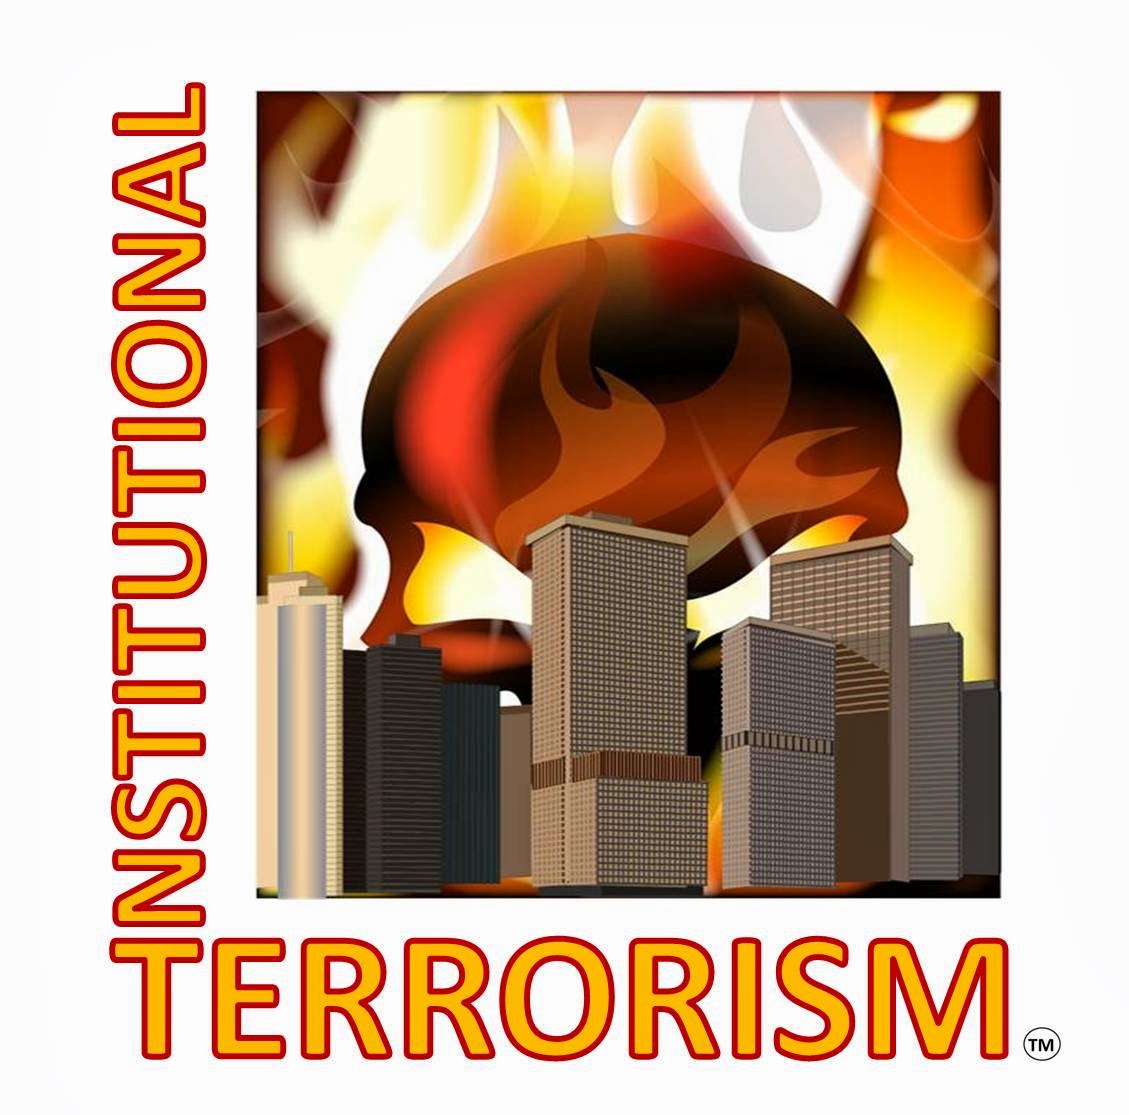 InstitutionalTerrorism - Services